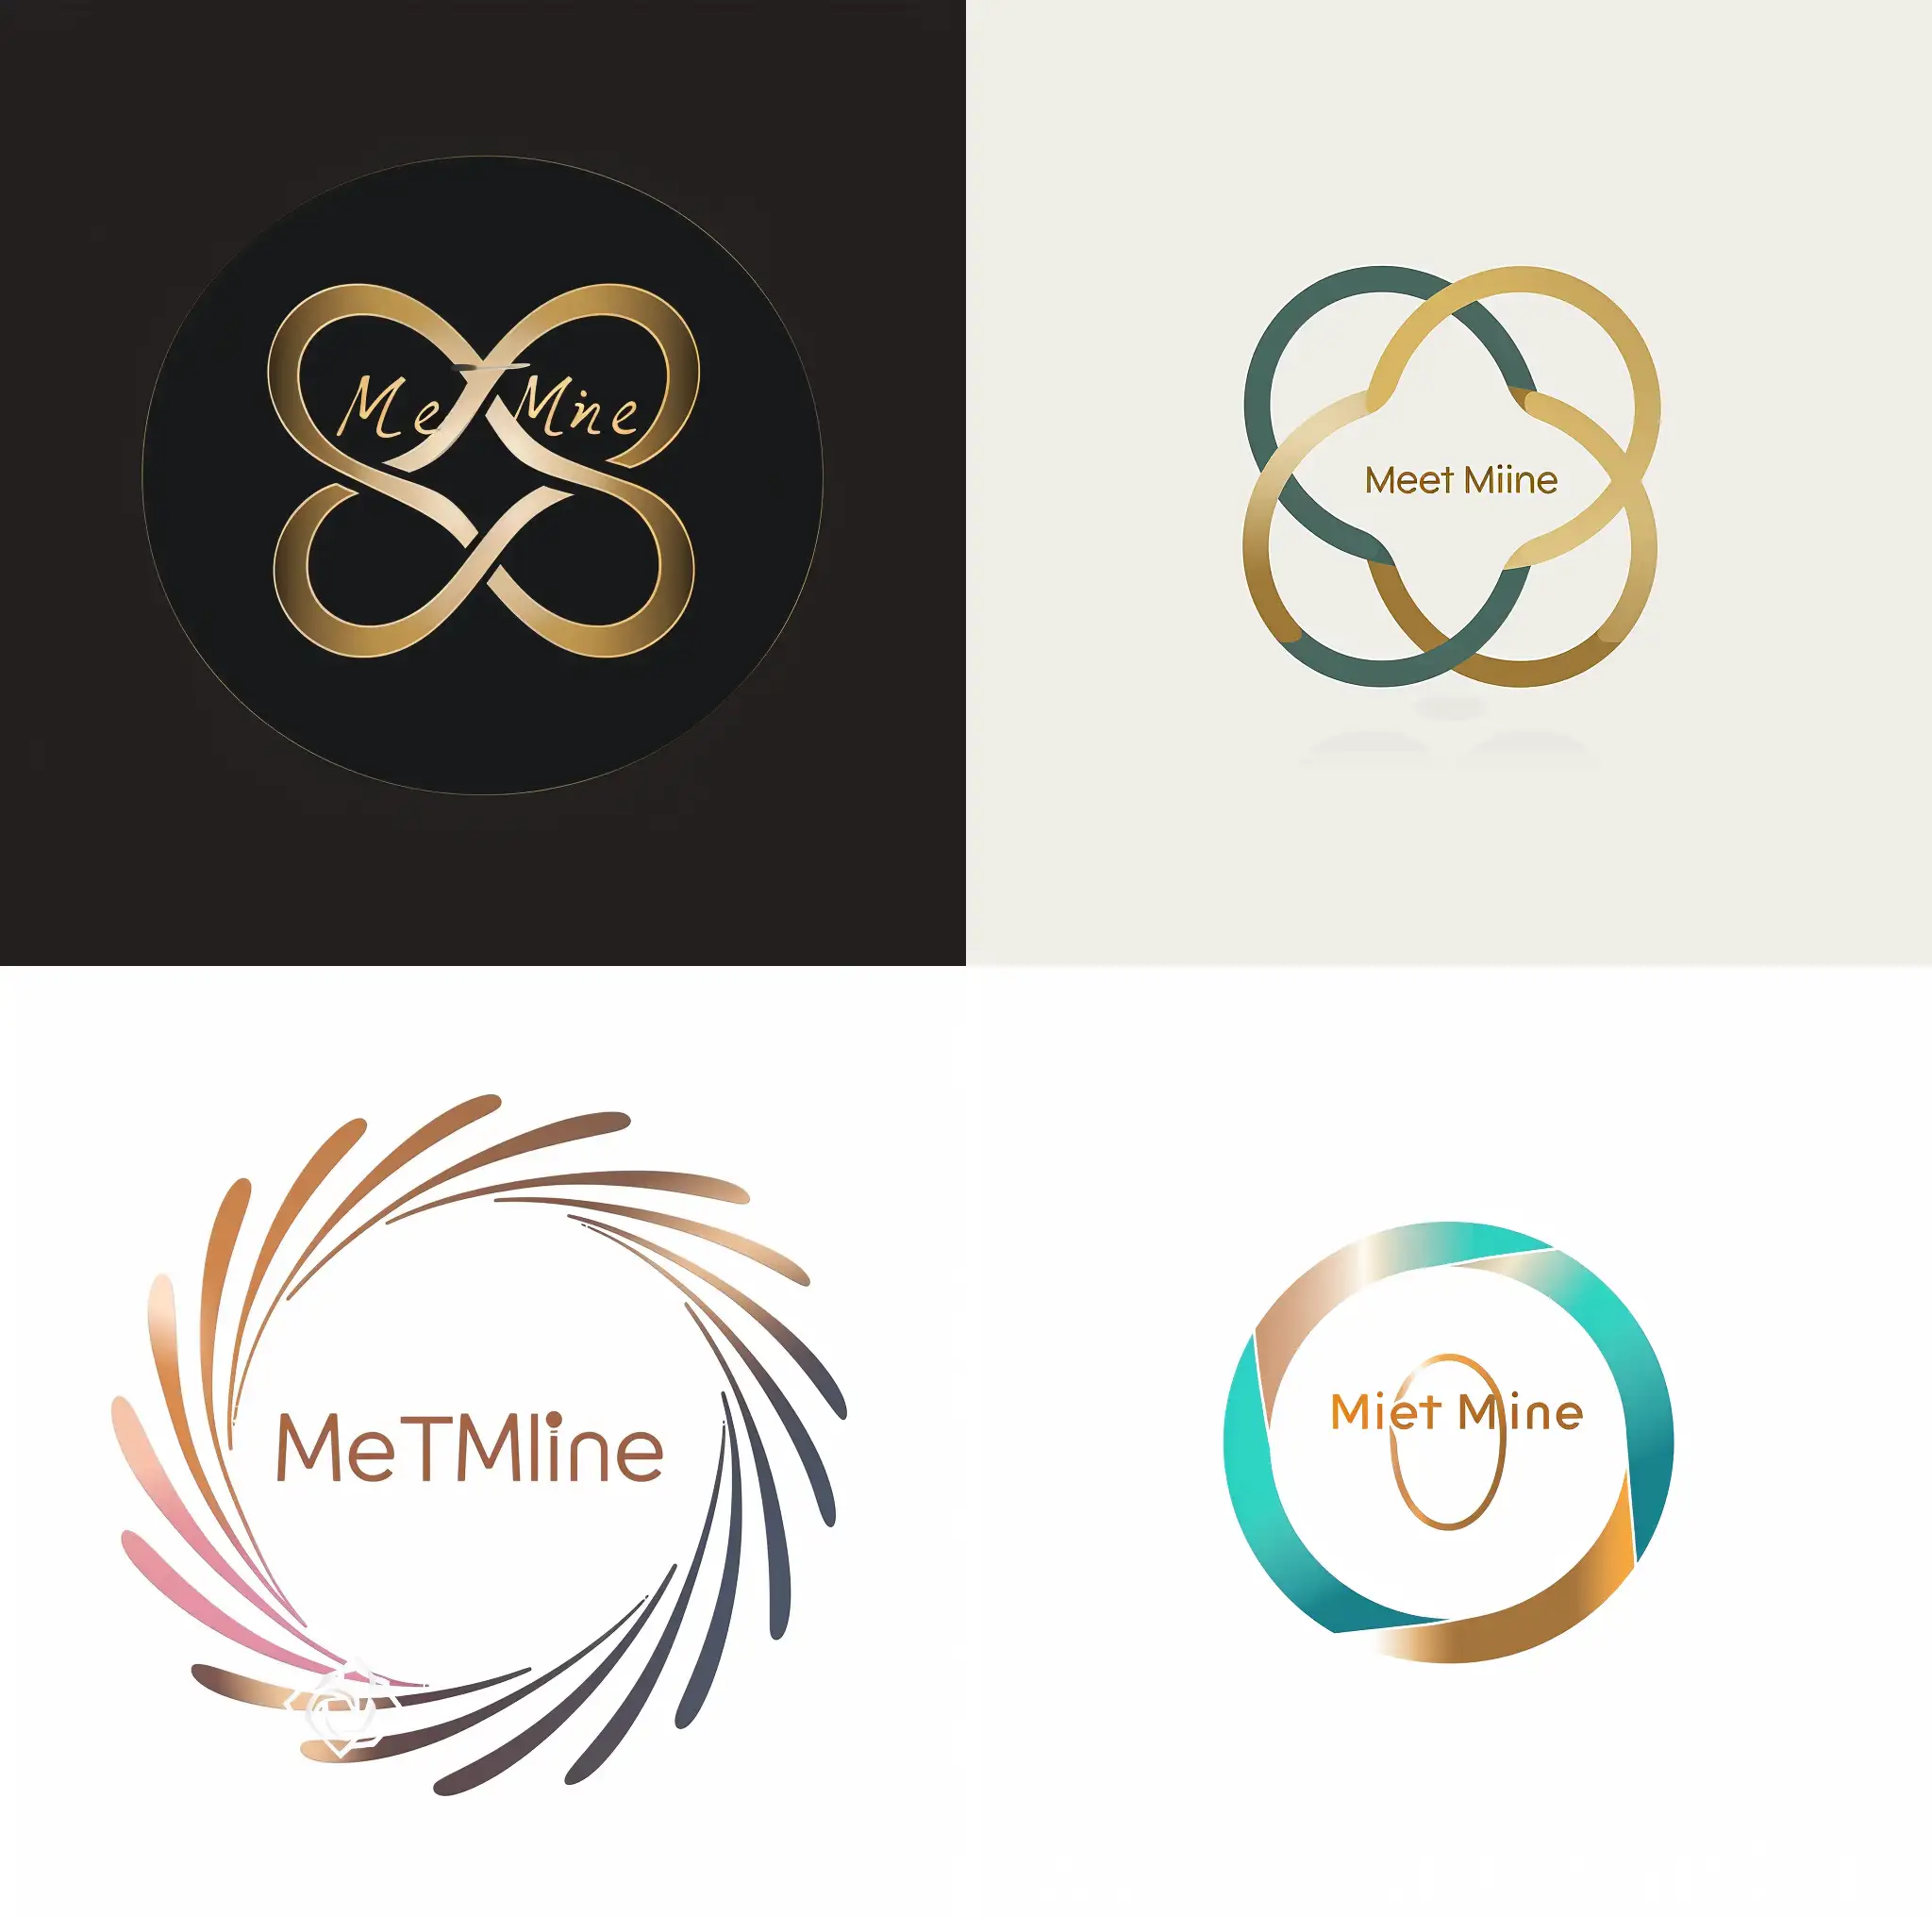 画一个MeetMine觅得珠宝的logo，要求符合年轻人的审美，